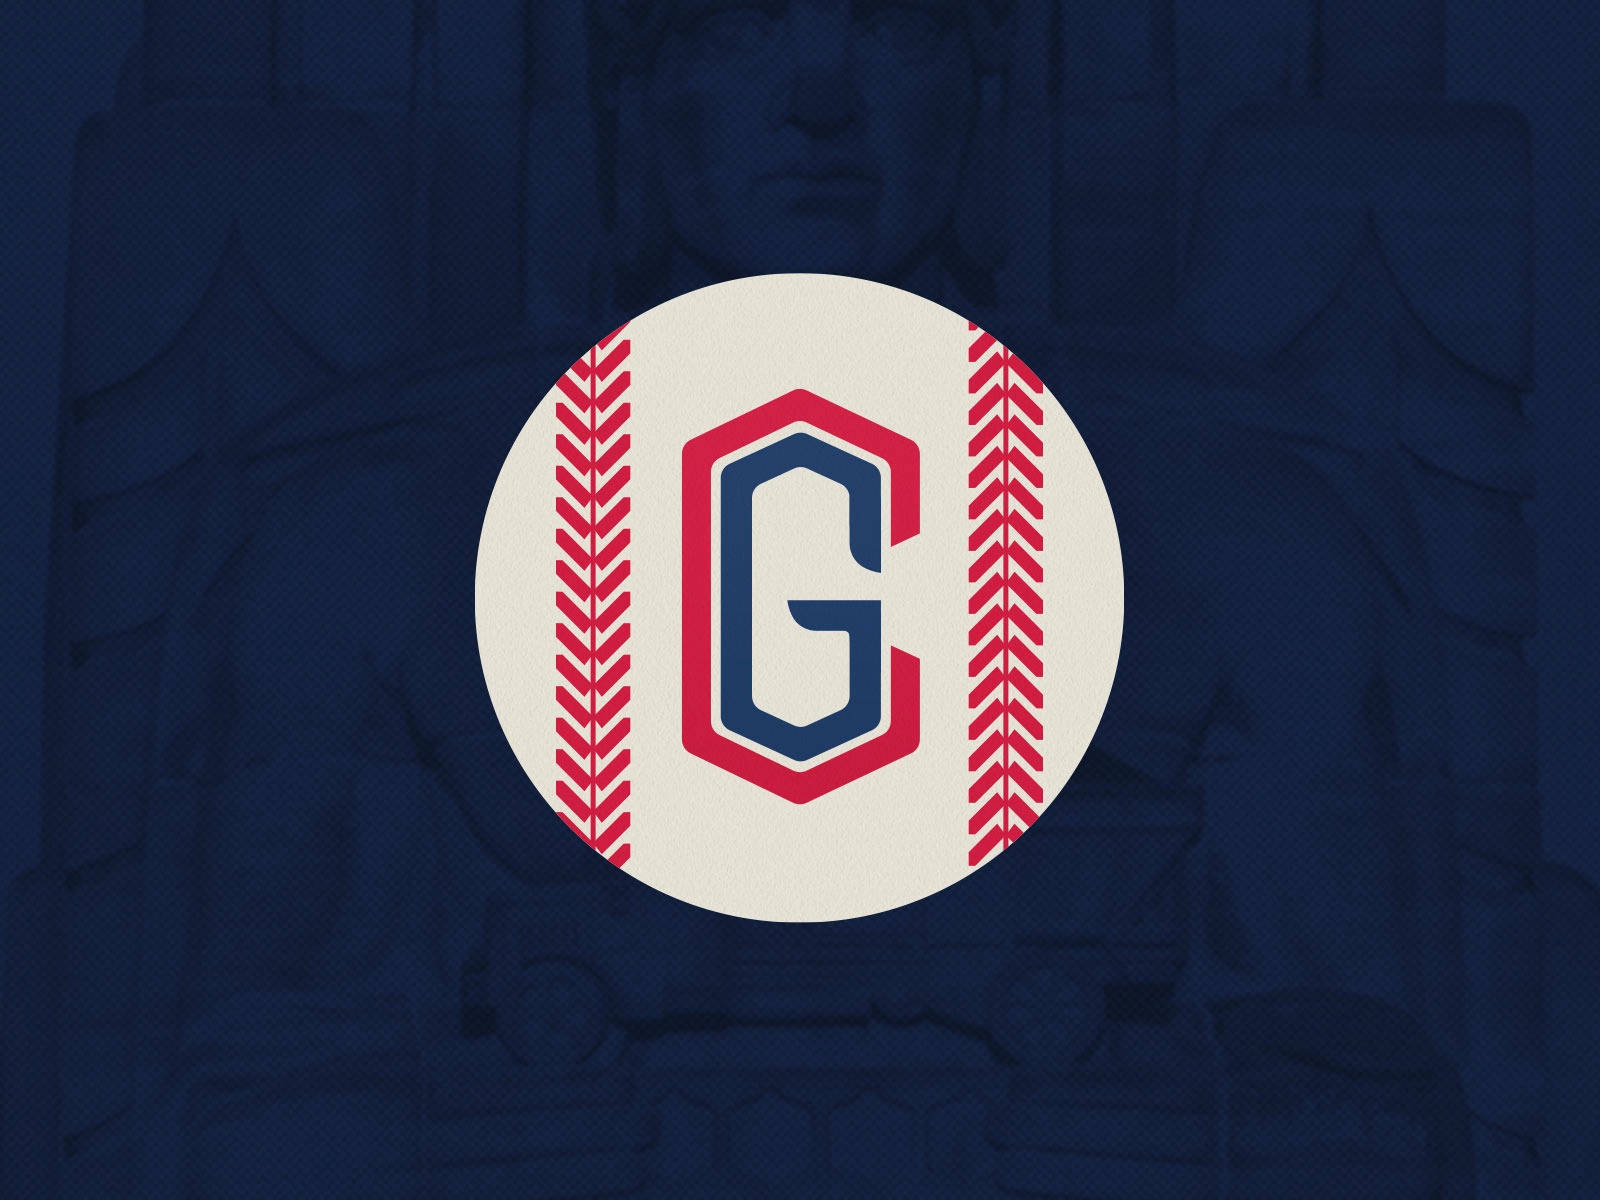 Cleveland Guardians Baseball Team Design Wallpaper